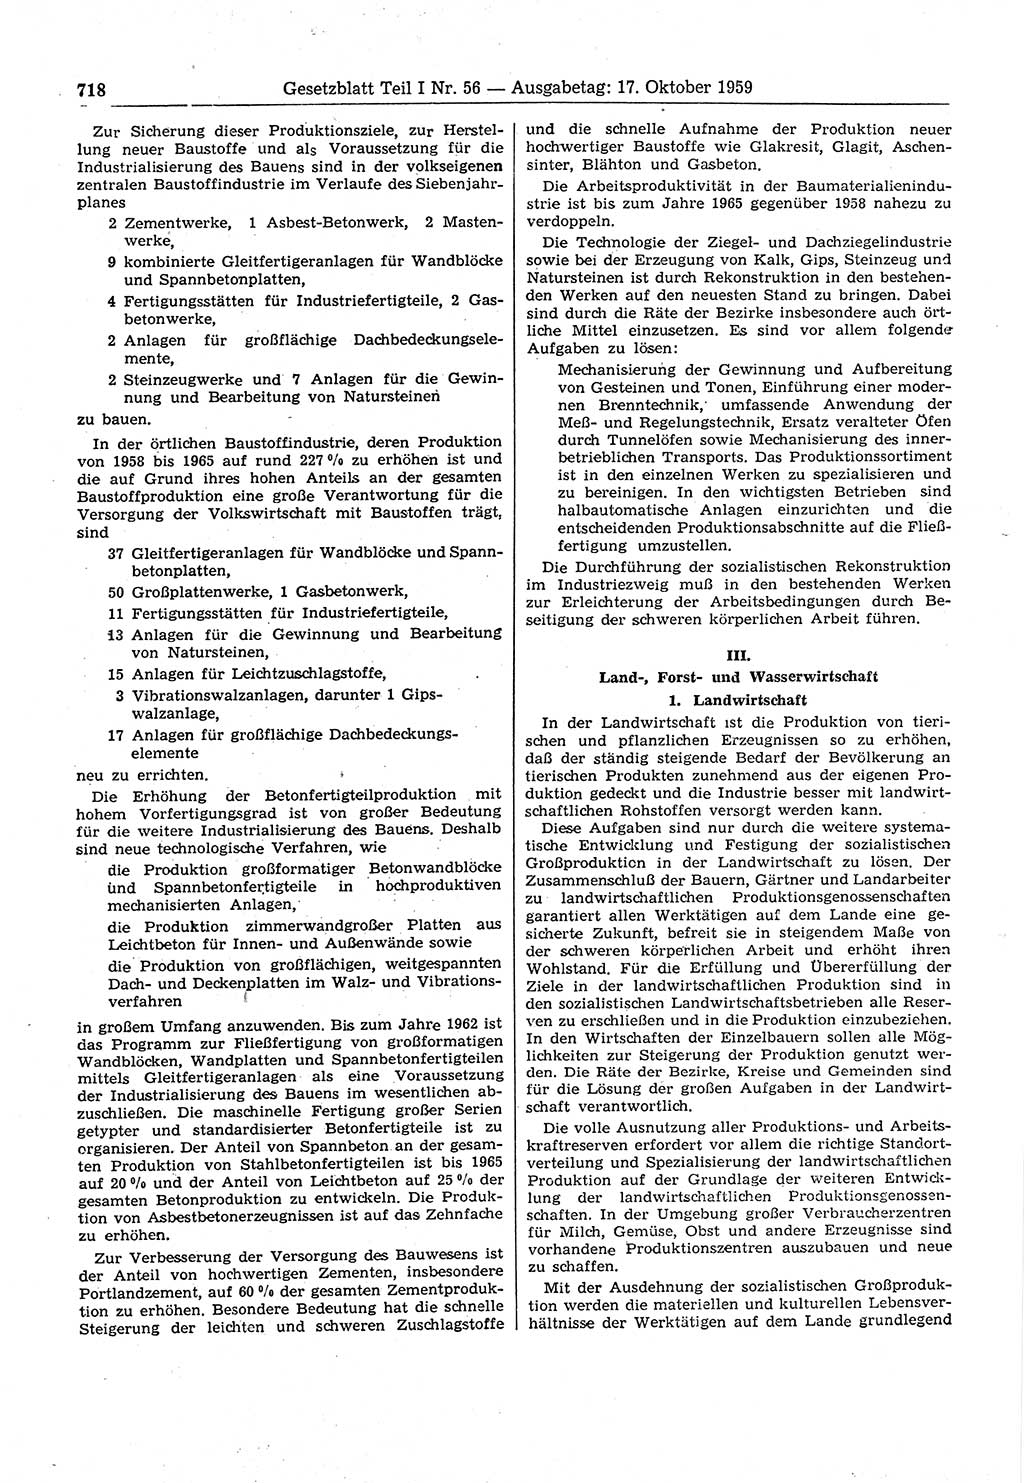 Gesetzblatt (GBl.) der Deutschen Demokratischen Republik (DDR) Teil Ⅰ 1959, Seite 718 (GBl. DDR Ⅰ 1959, S. 718)